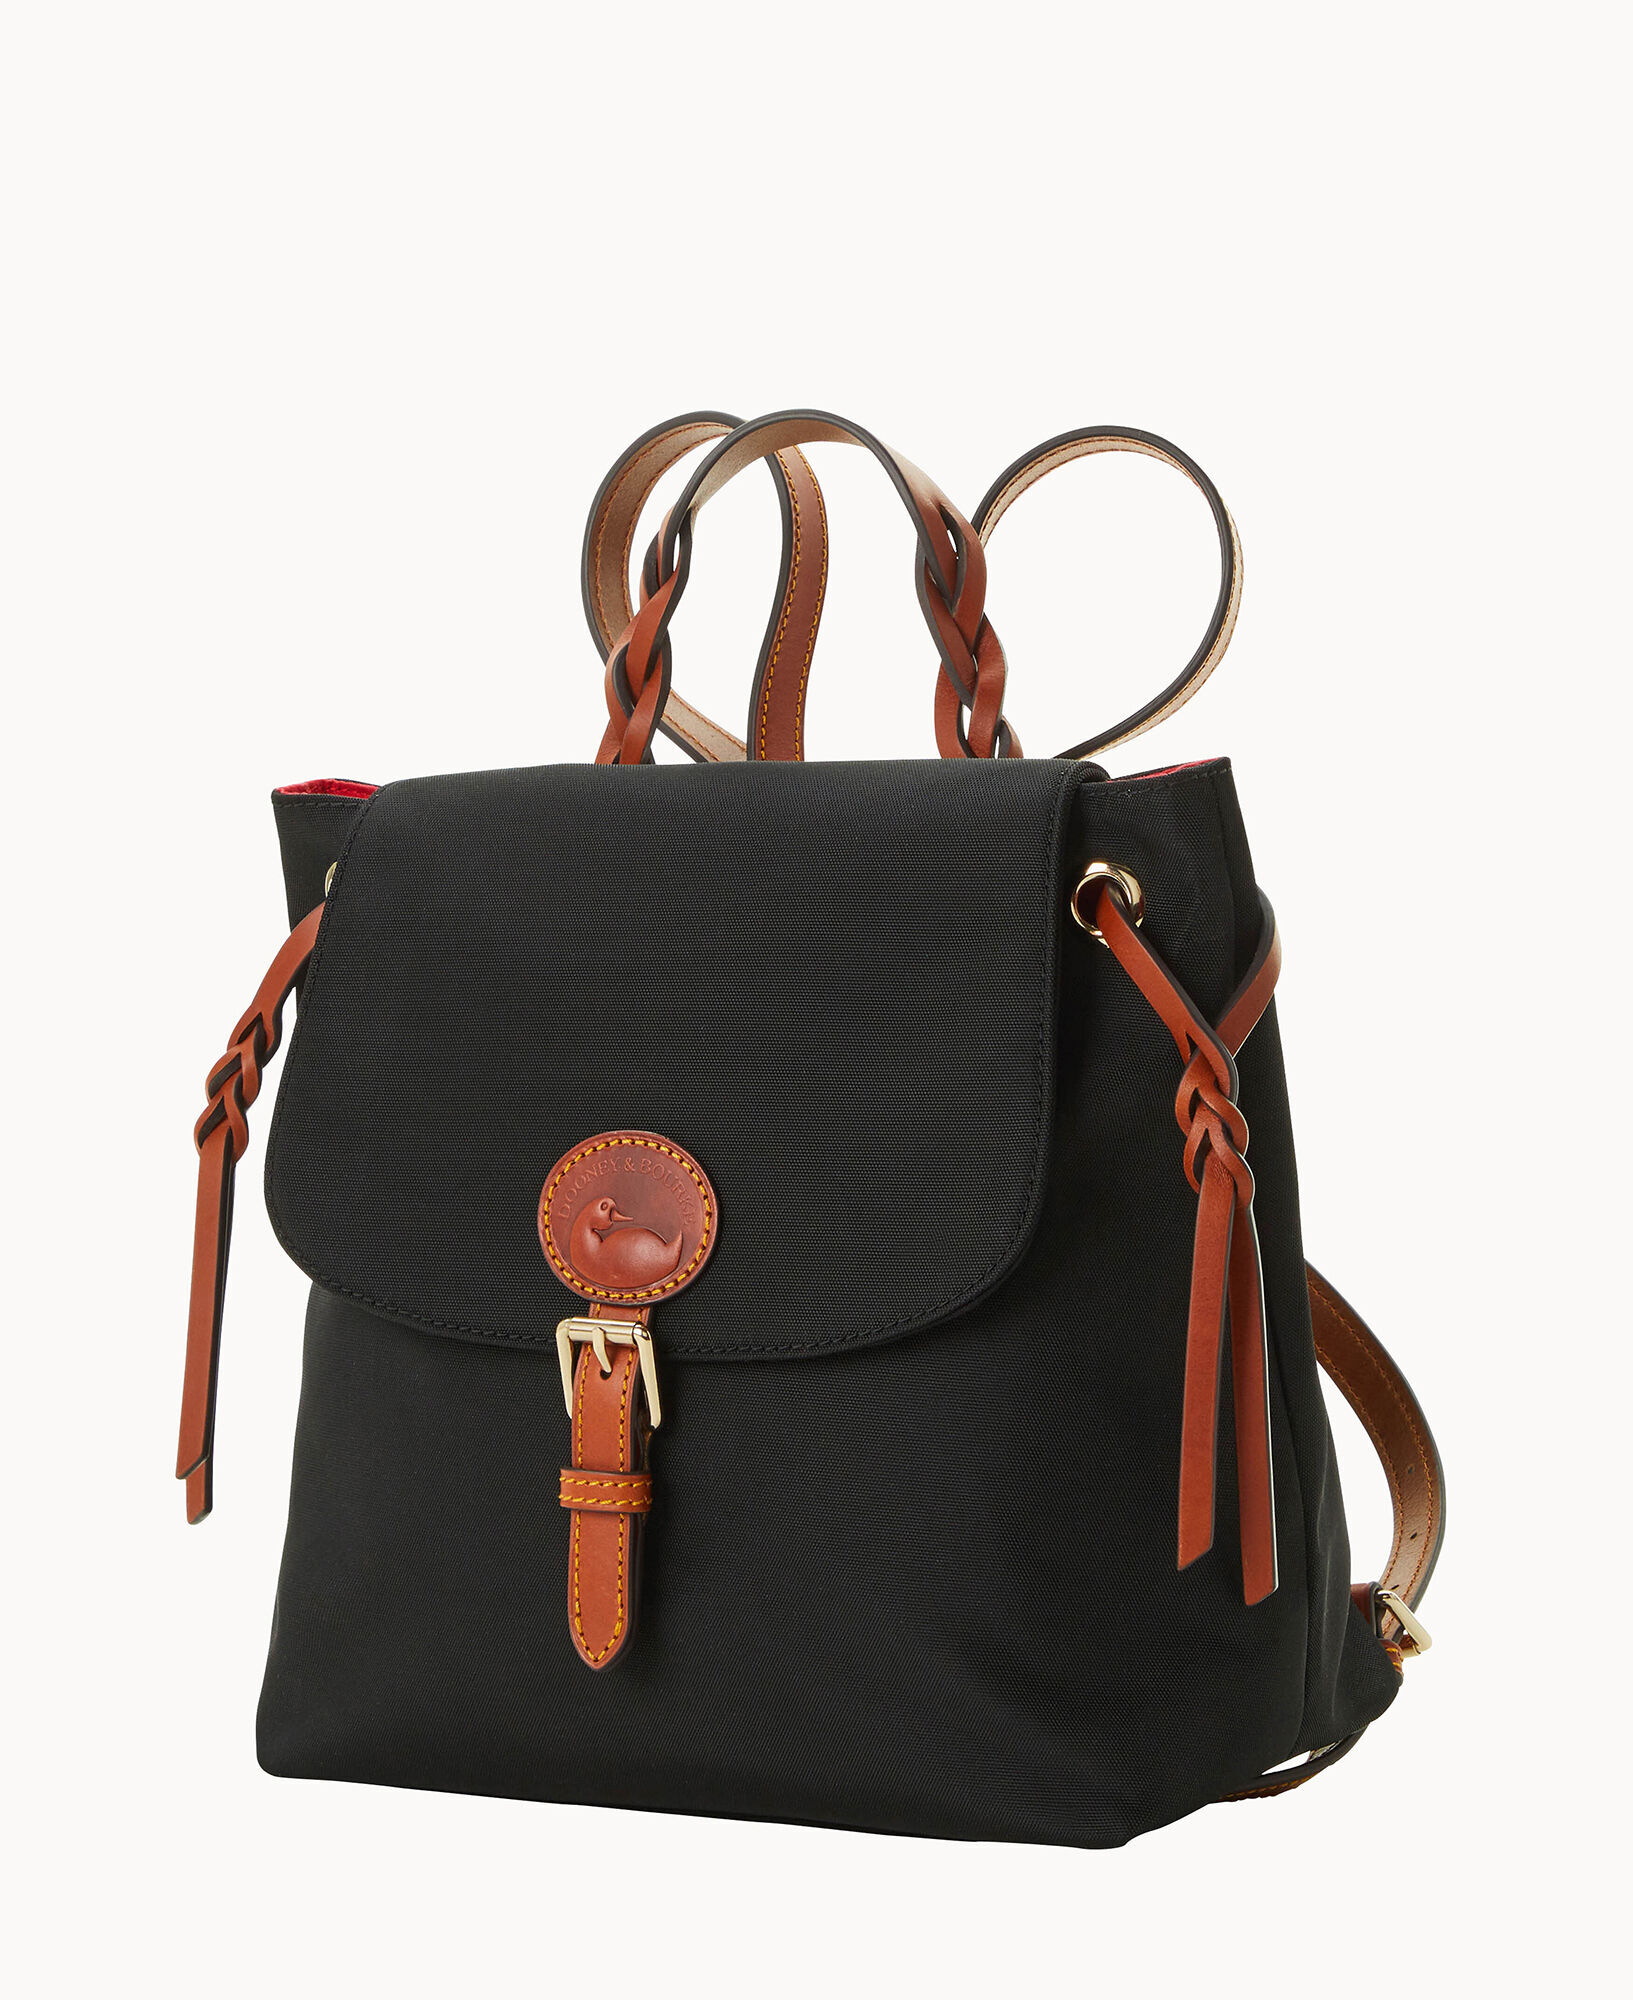  Dooney & Bourke Handbag, Nylon Flap Backpack - Black